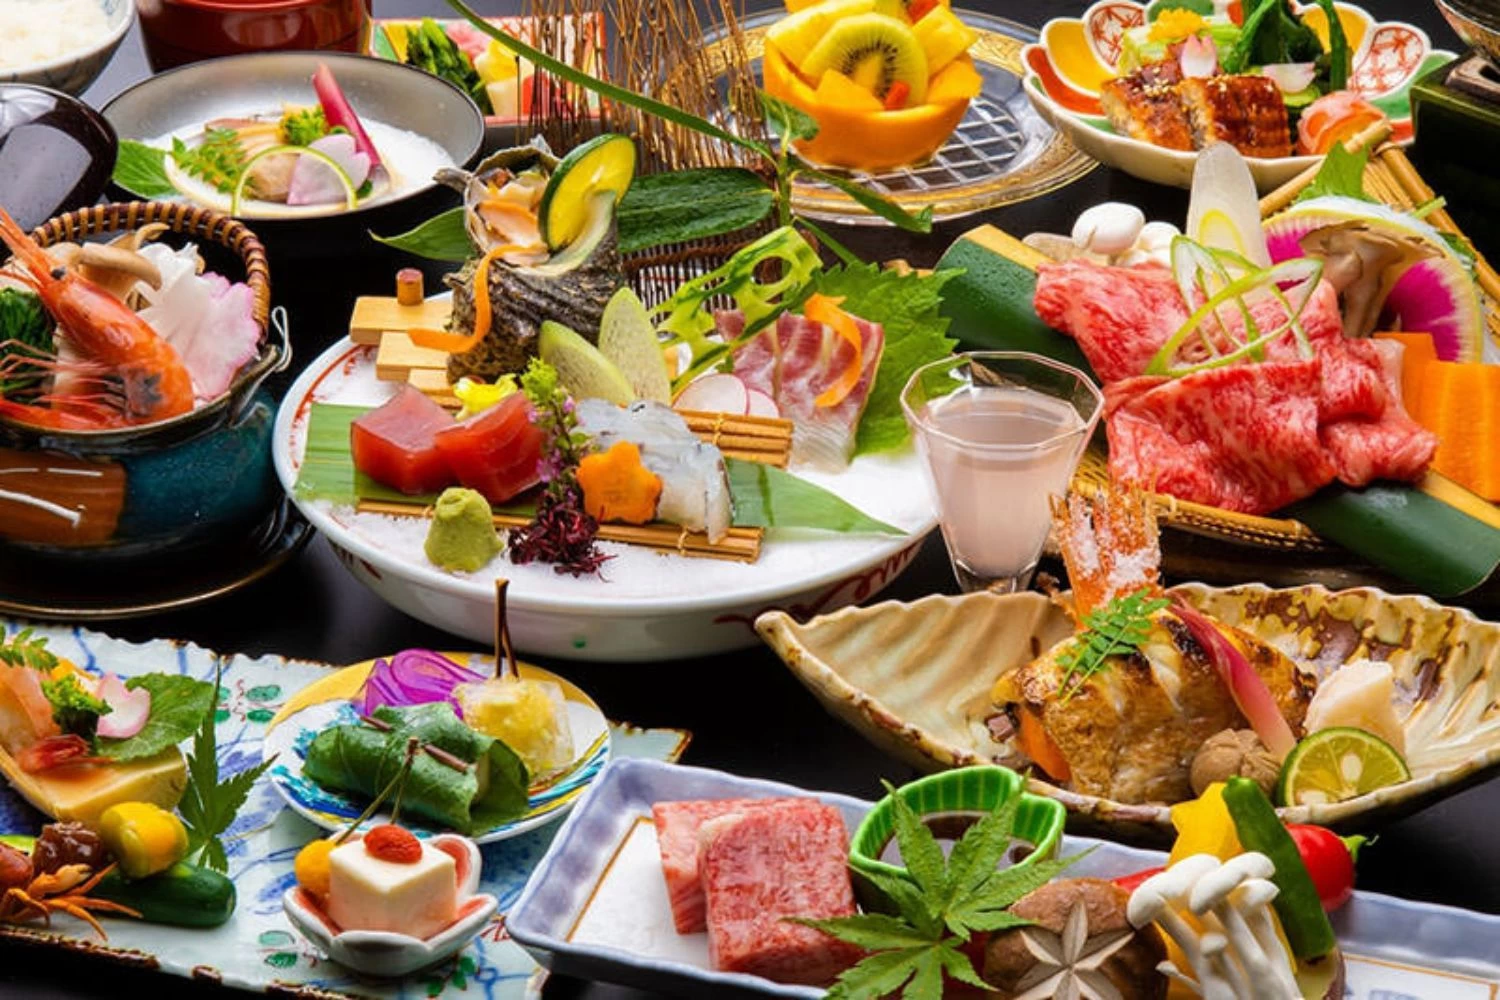 食事はプライベートを尊重する個室食が可能。加賀野菜、甘海老、カニなど素材を活かした加賀の季節の味が楽しめます